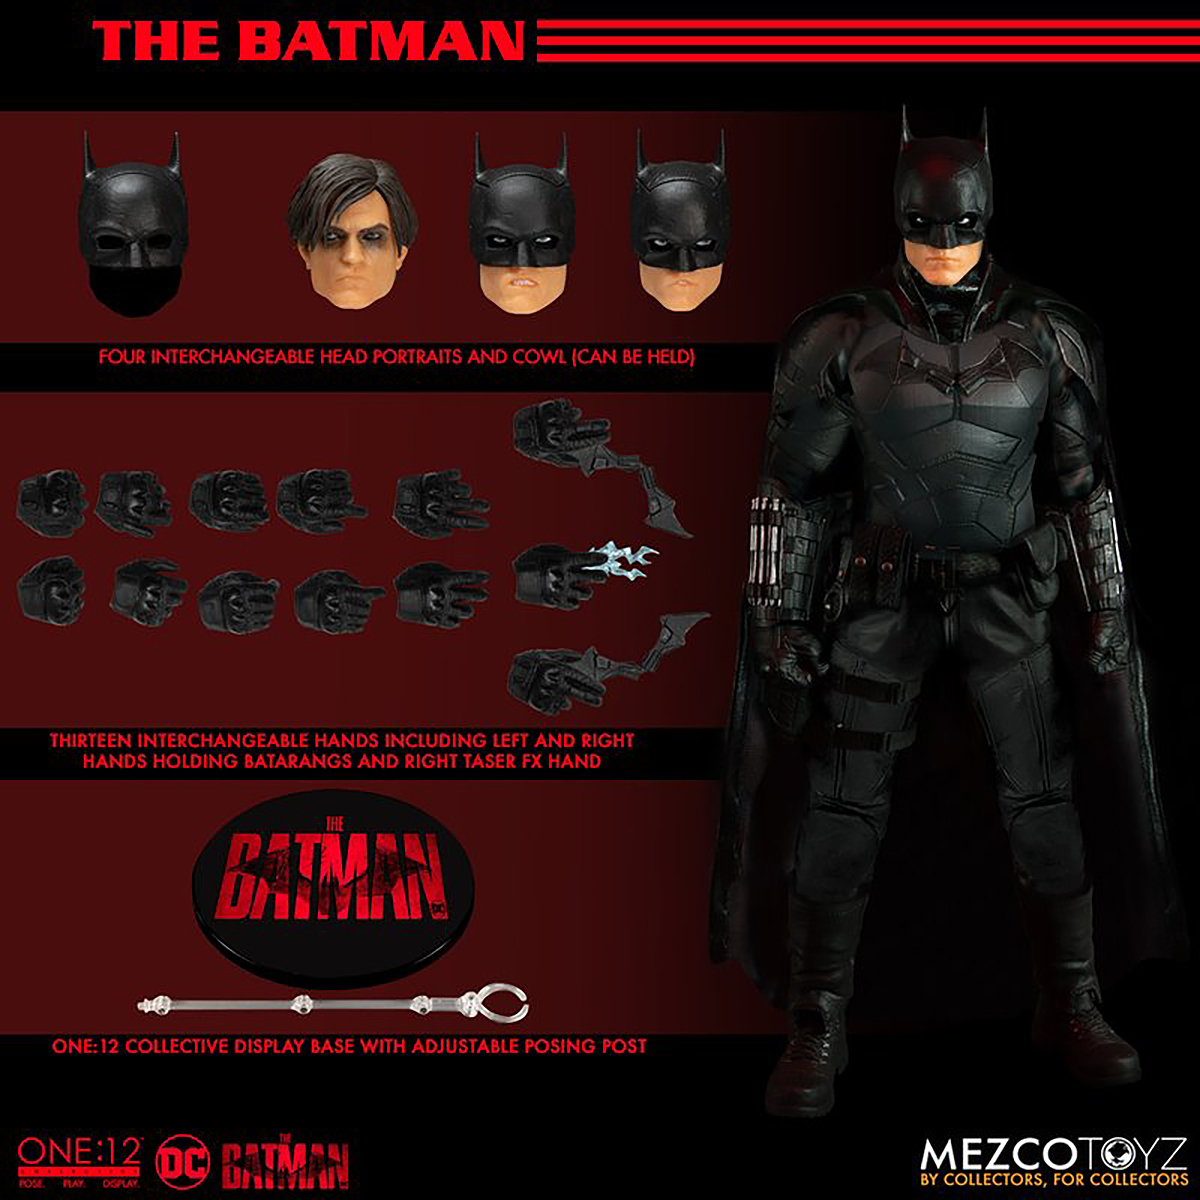 The MEZCO One:12 Actionfigur TOYS Actionfigur Batman